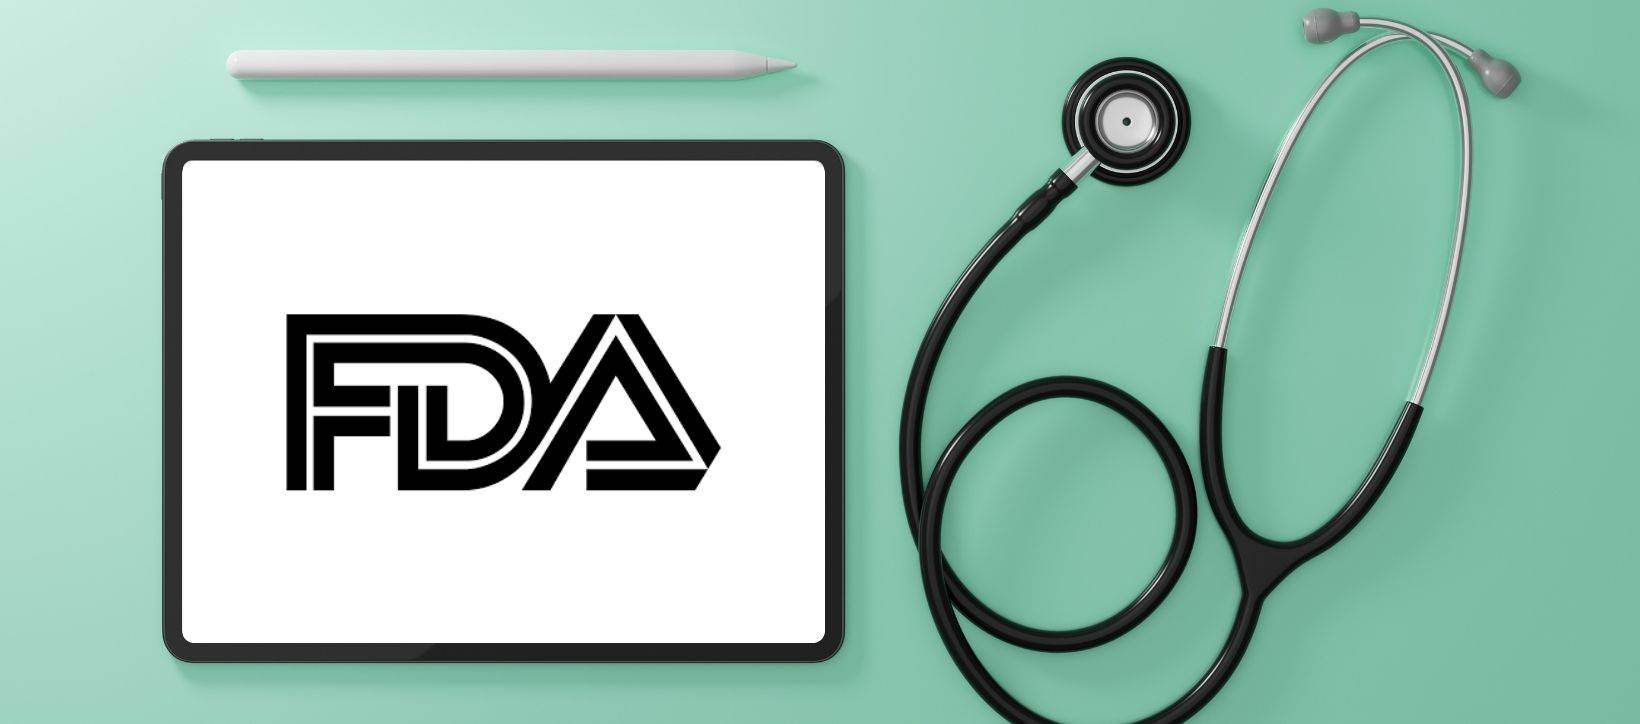 کمپیوٹیشنل ماڈلنگ اور سمولیشن کی کریڈیبلٹی کا اندازہ لگانے پر FDA گائیڈنس: کریڈیبلٹی ایویڈینس حصہ 2 | ایف ڈی اے